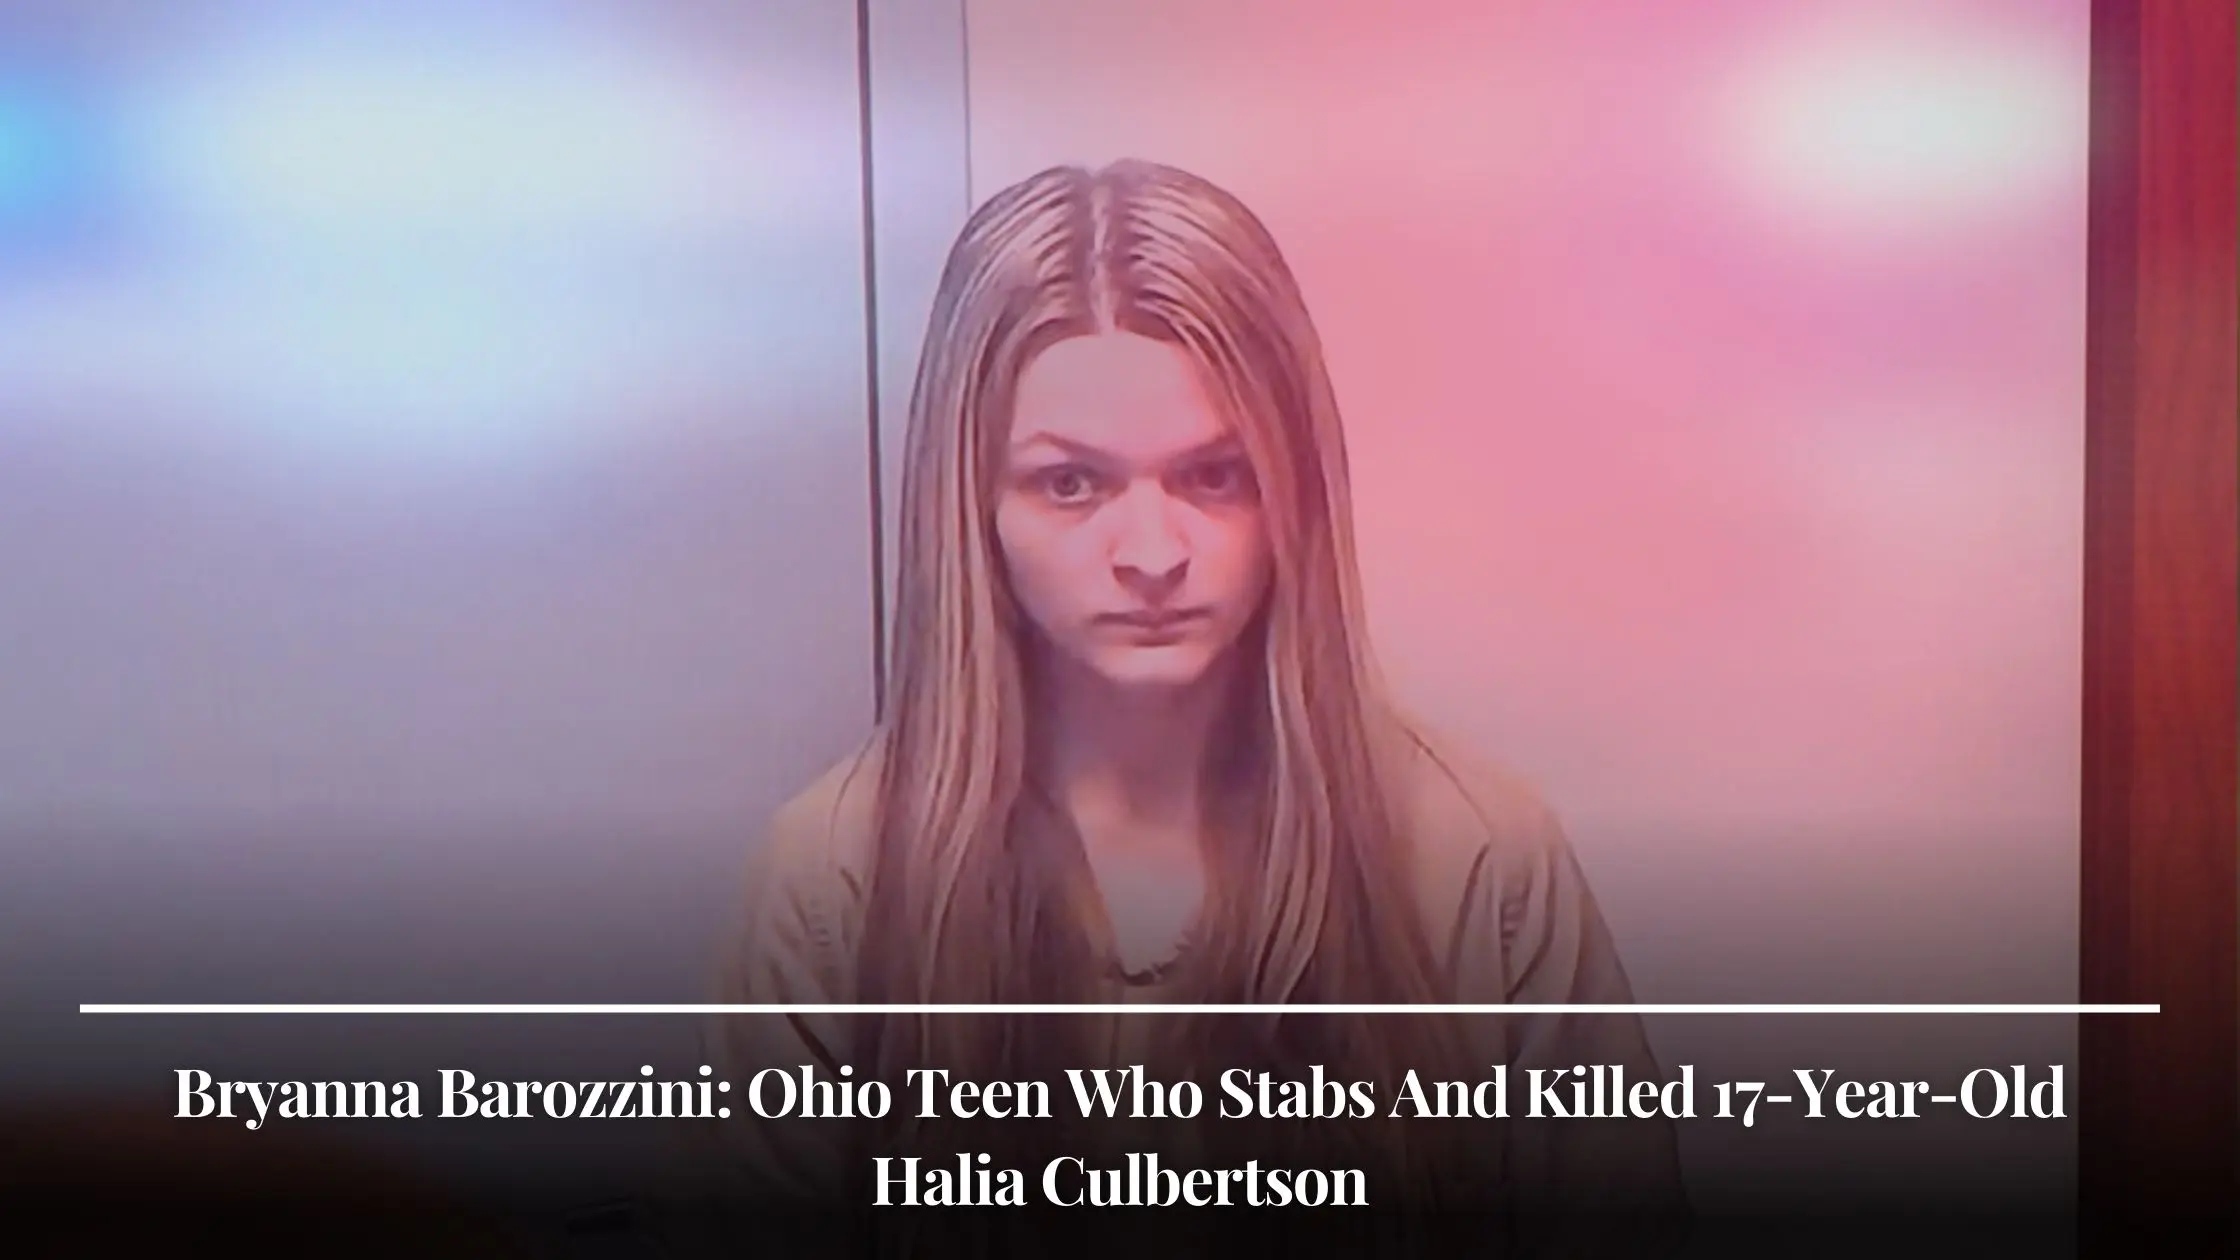 Bryanna Barozzini Ohio Teen Who Stabs And Killed 17-Year-Old Halia Culbertson